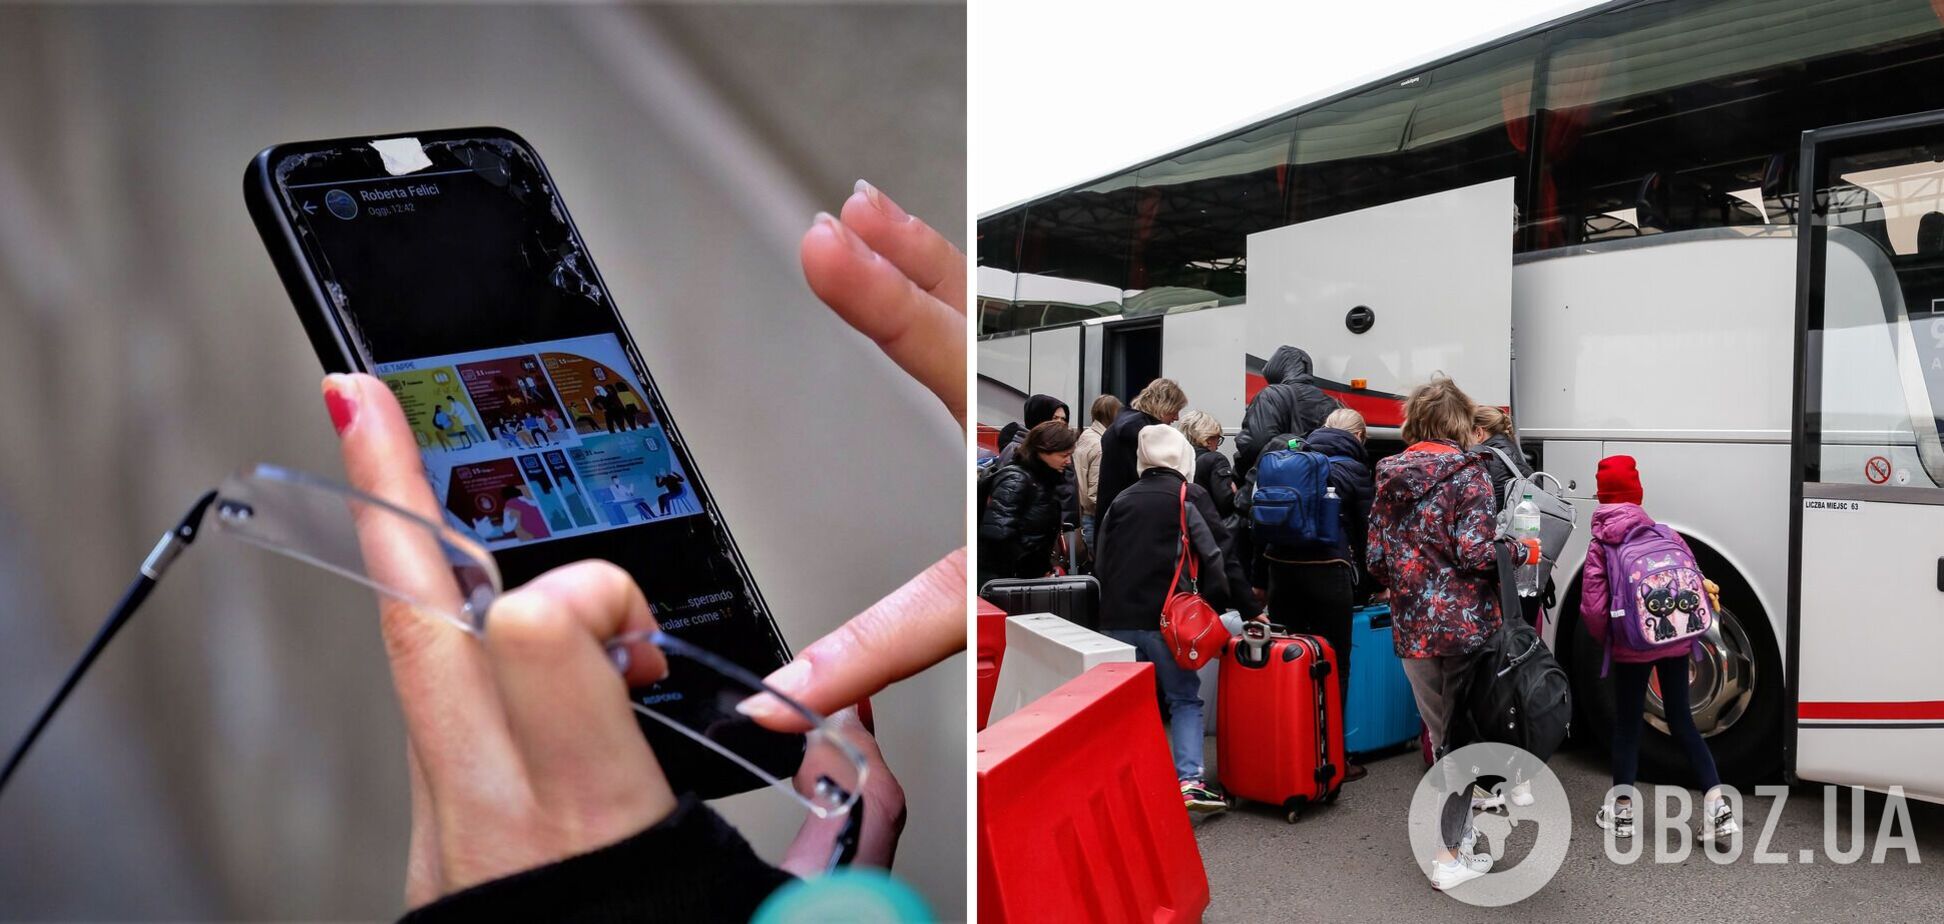 Мобильный интернет беженцы могут получить бесплатно, но с ограничениями